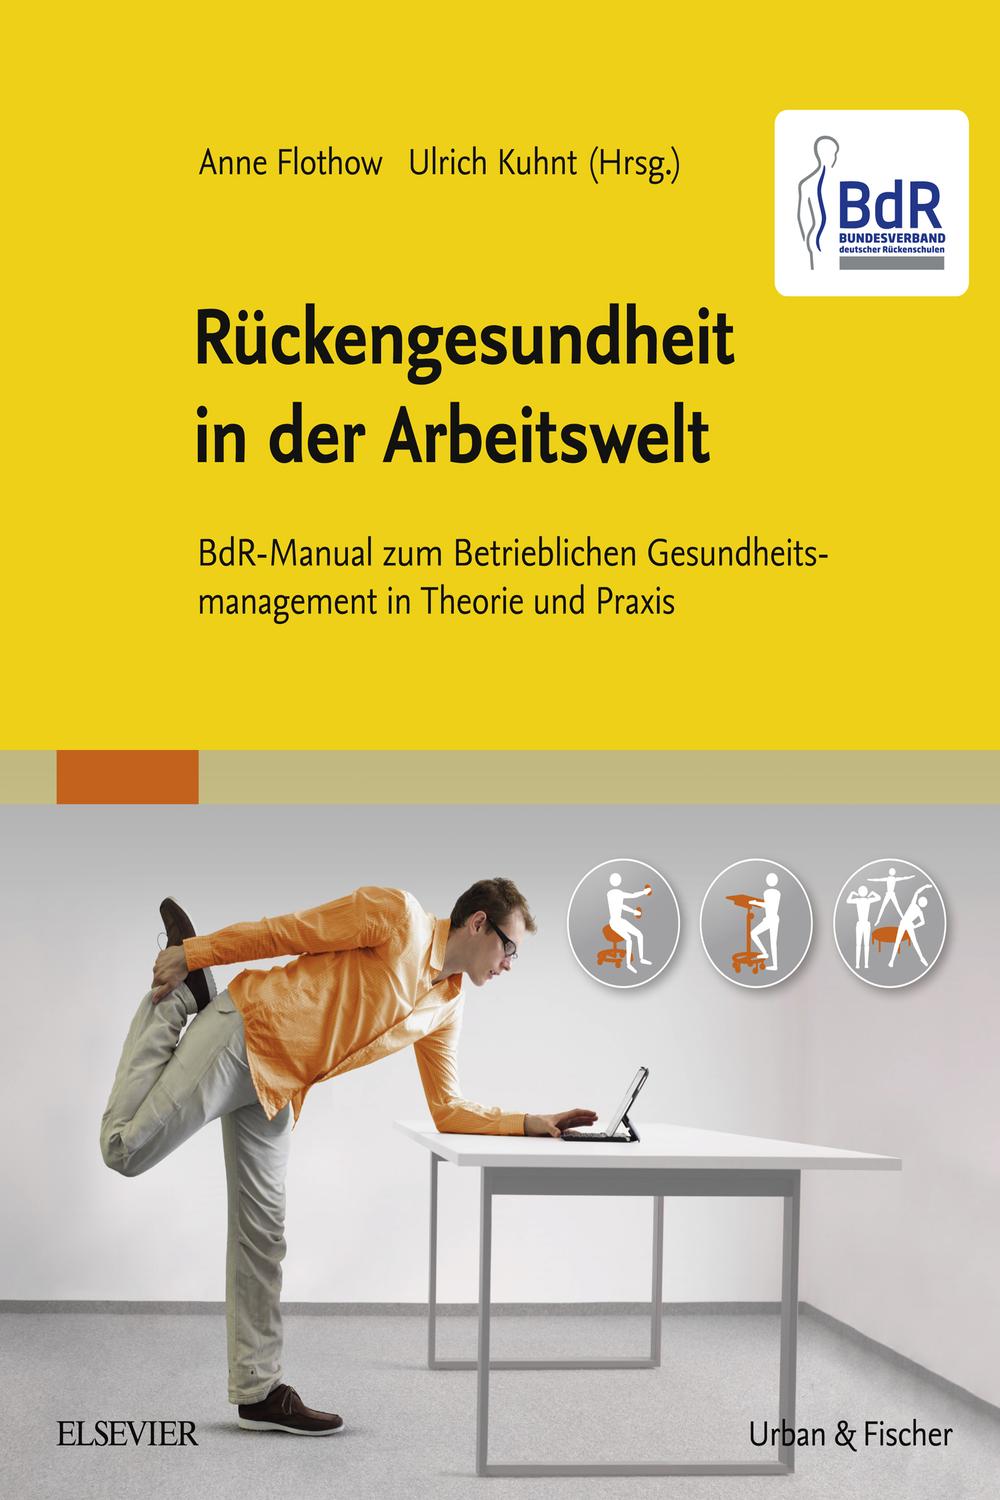 BdR-Manual Rückengesundheit in der Arbeitswelt - Anne Flothow, Ulrich Kuhnt